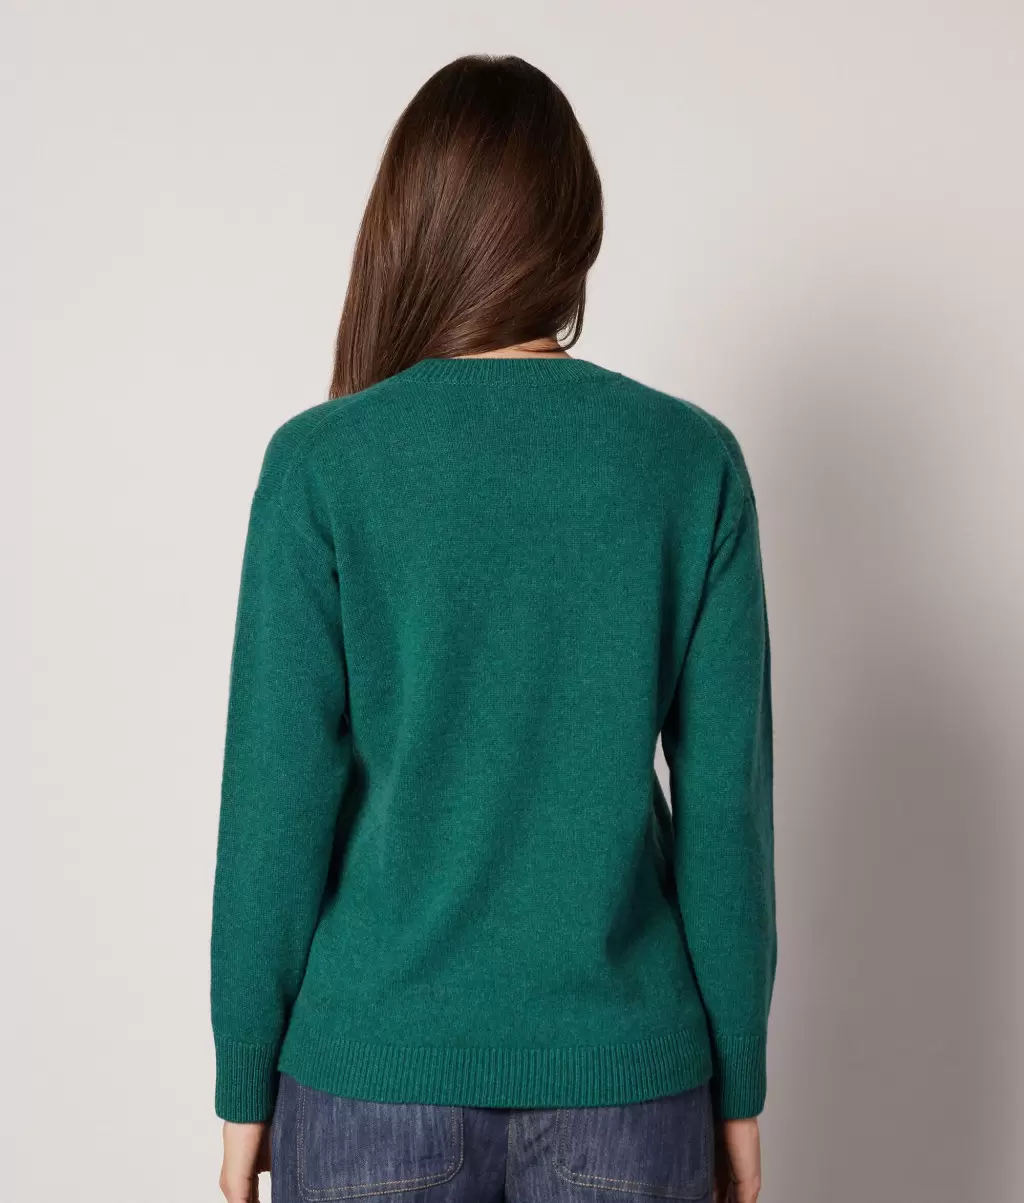 Kobieta Falconeri Dark_Green Swetry Z Okrągłym Dekoltem Sweter Z Okrągłym Dekoltem Z Kaszmiru Ultrasoft - 2